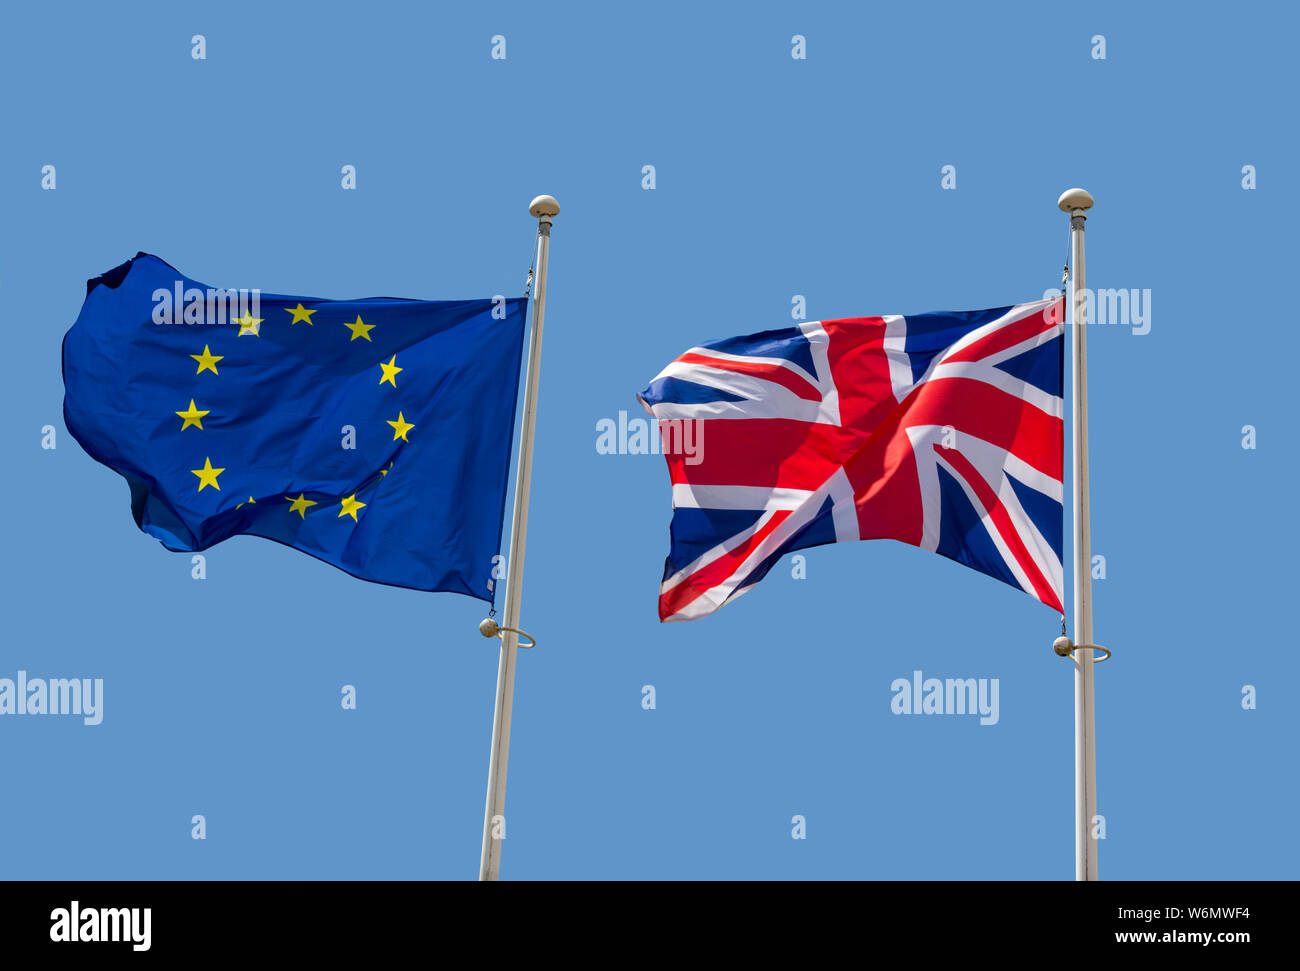 Die Flagge der Europäischen Union und den britischen Union Jack Flagge, Flagge des Vereinigten Königreichs, Konzept Brexit Stockfoto